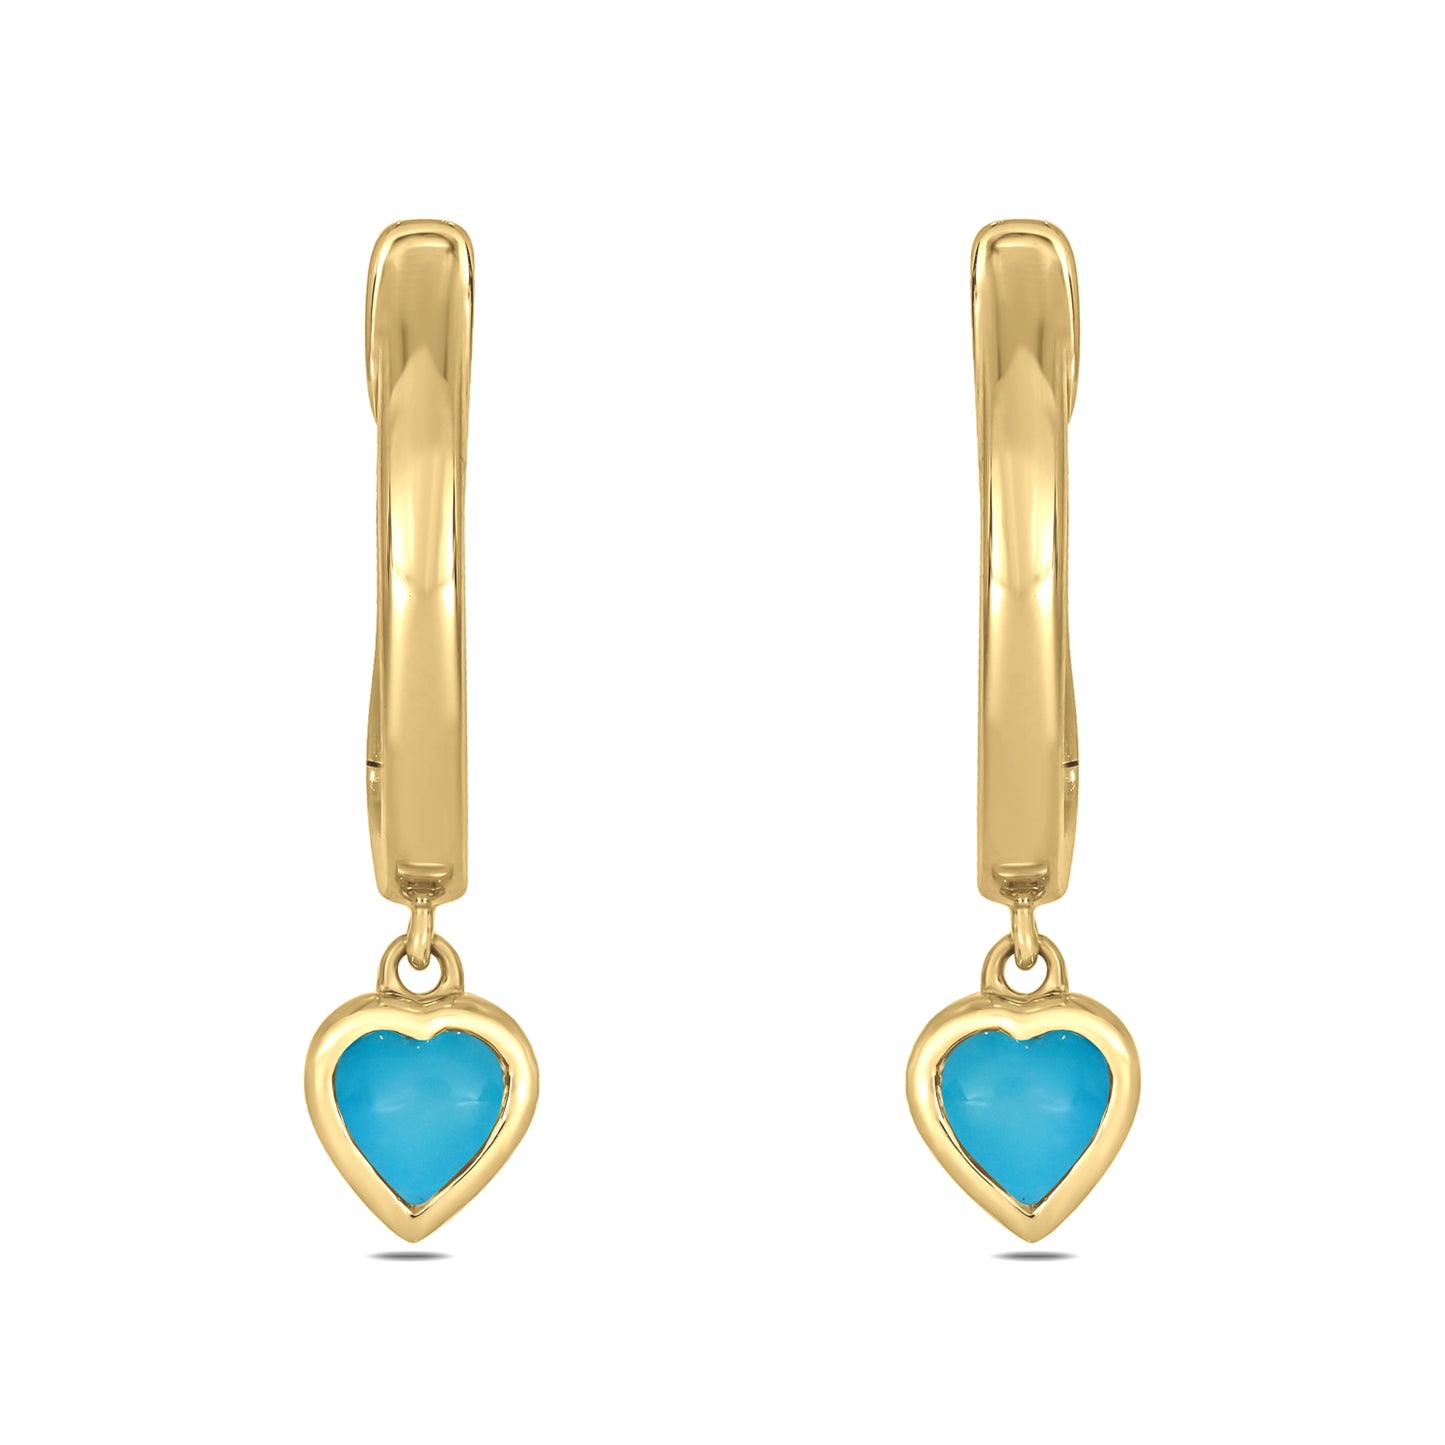 14KT Gold & Silver Diamond Mini Dangling Gemstone Hoop Earrings